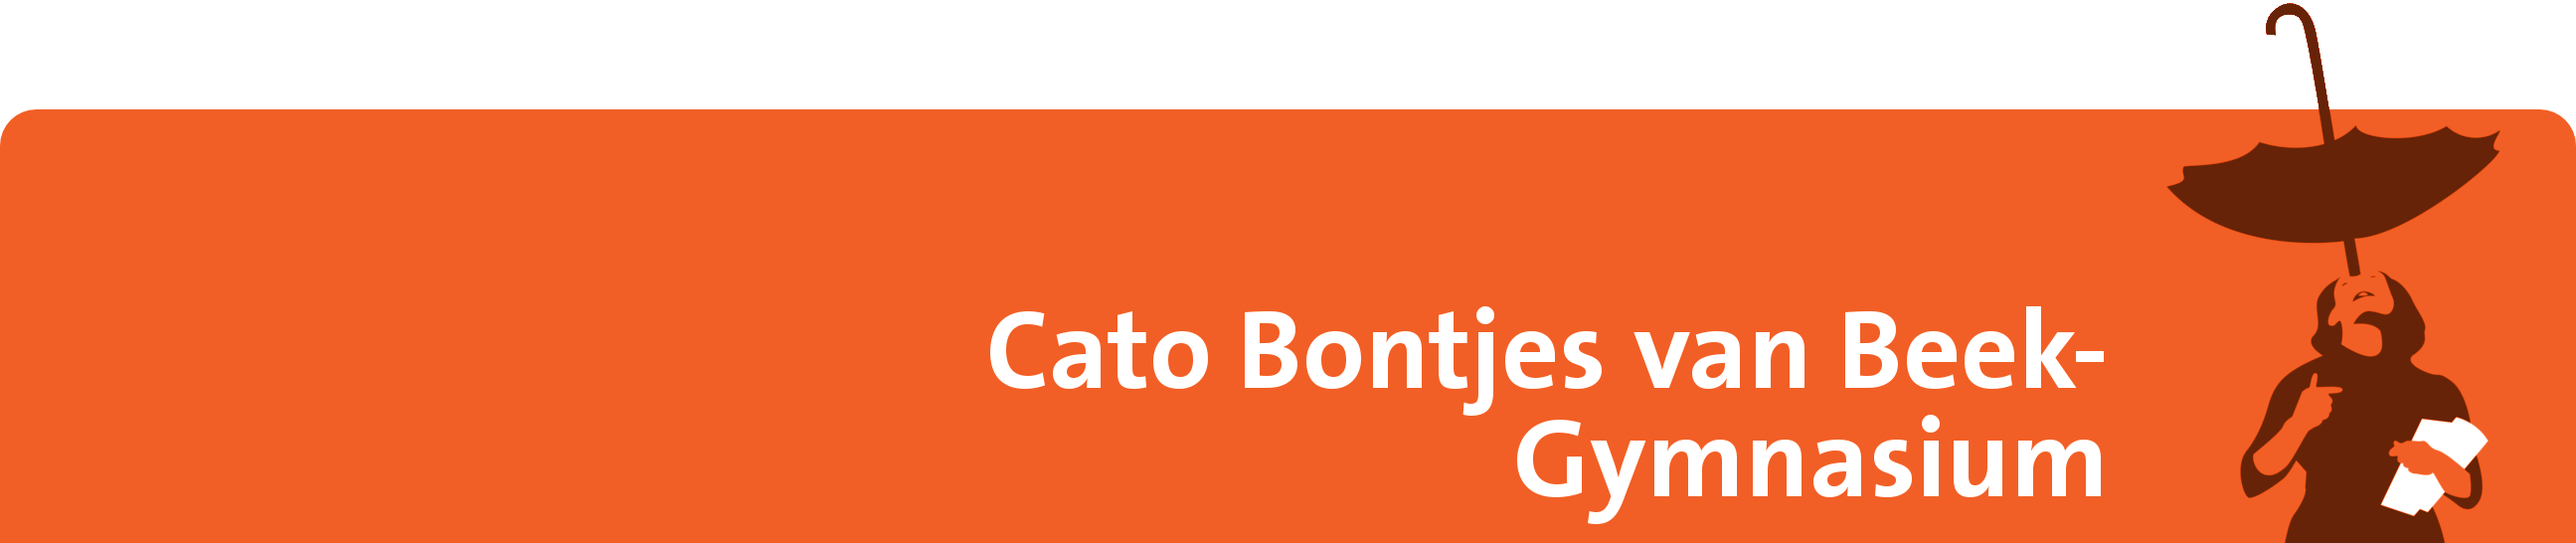 Cato Bontjes van Beek-Gymnasium Logo